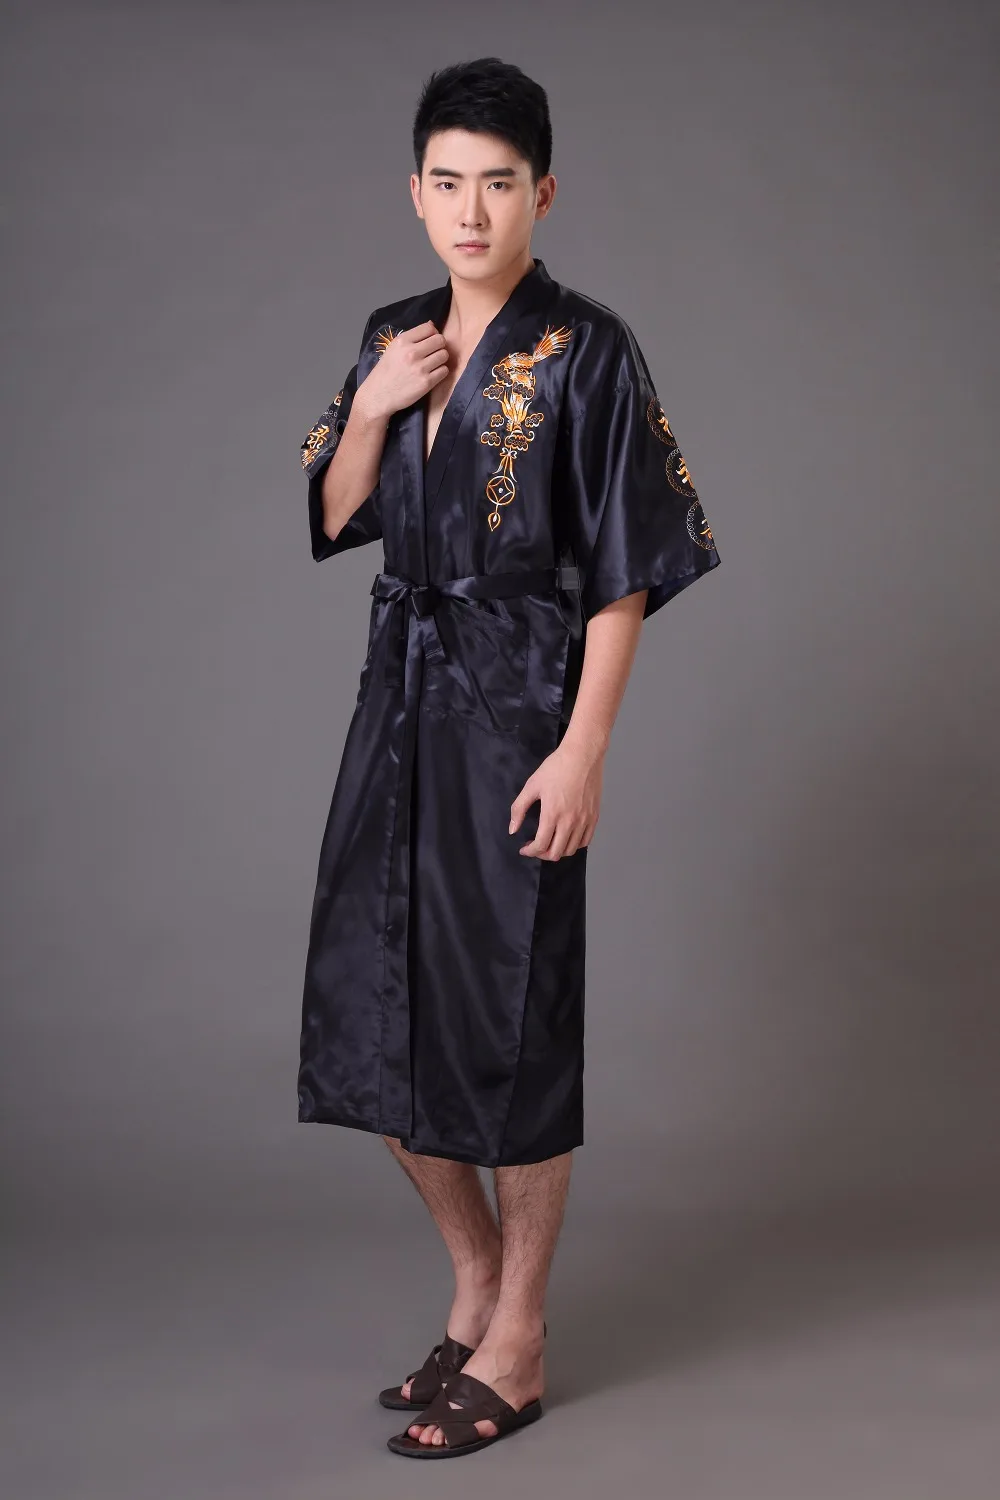 Черная китайская Мужская Ночная рубашка с вышивкой дракона, летняя атласная пижама, кимоно, Размеры S M L XL XXL XXXL MP022